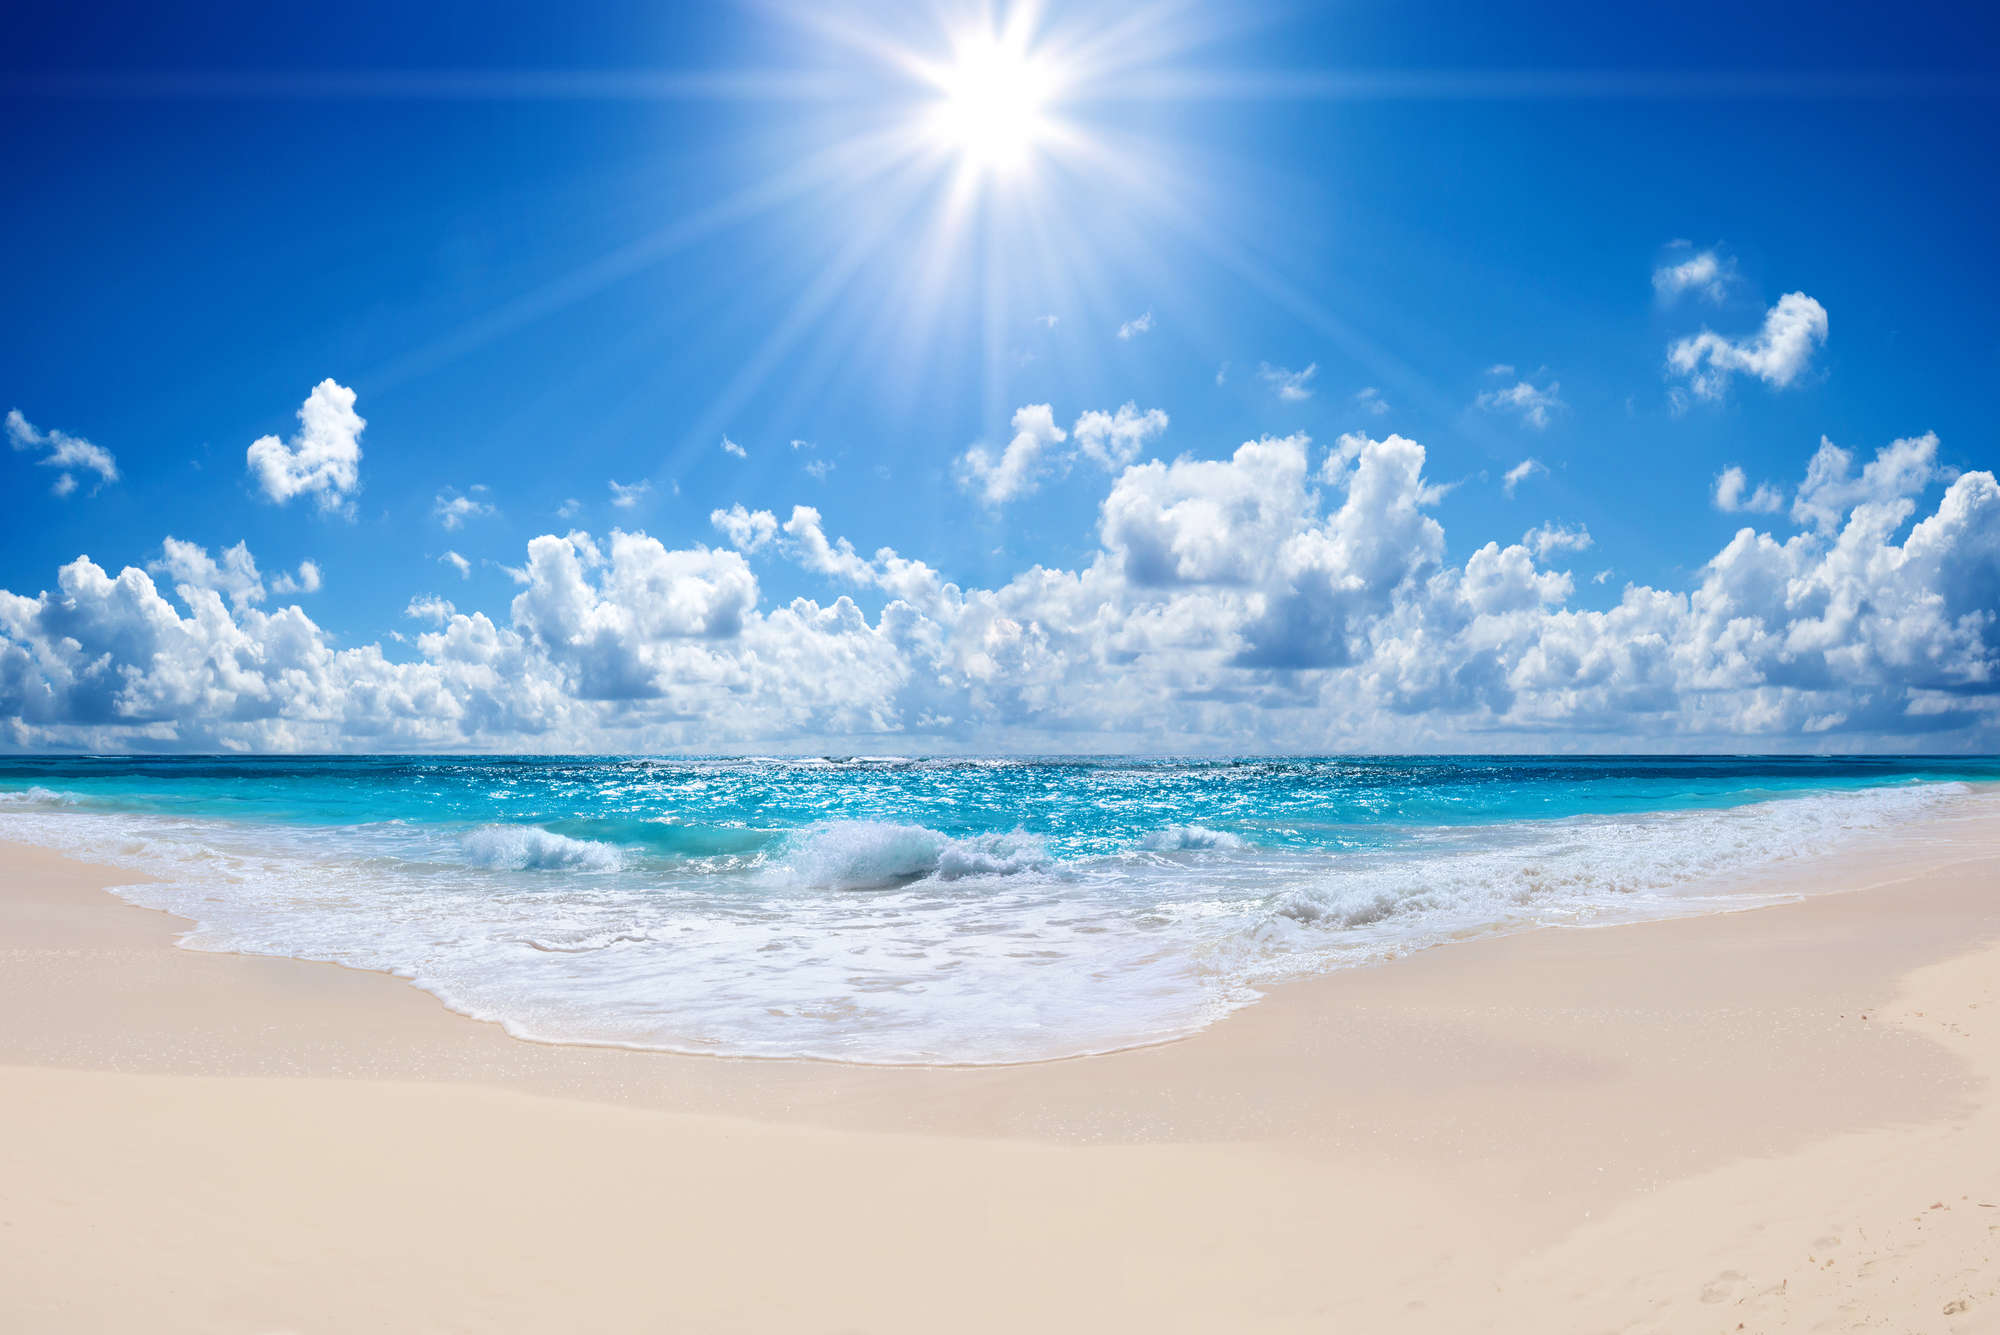             Papel Pintado Playa Olas con Sol Brillante en Tela No Tejida Mate
        